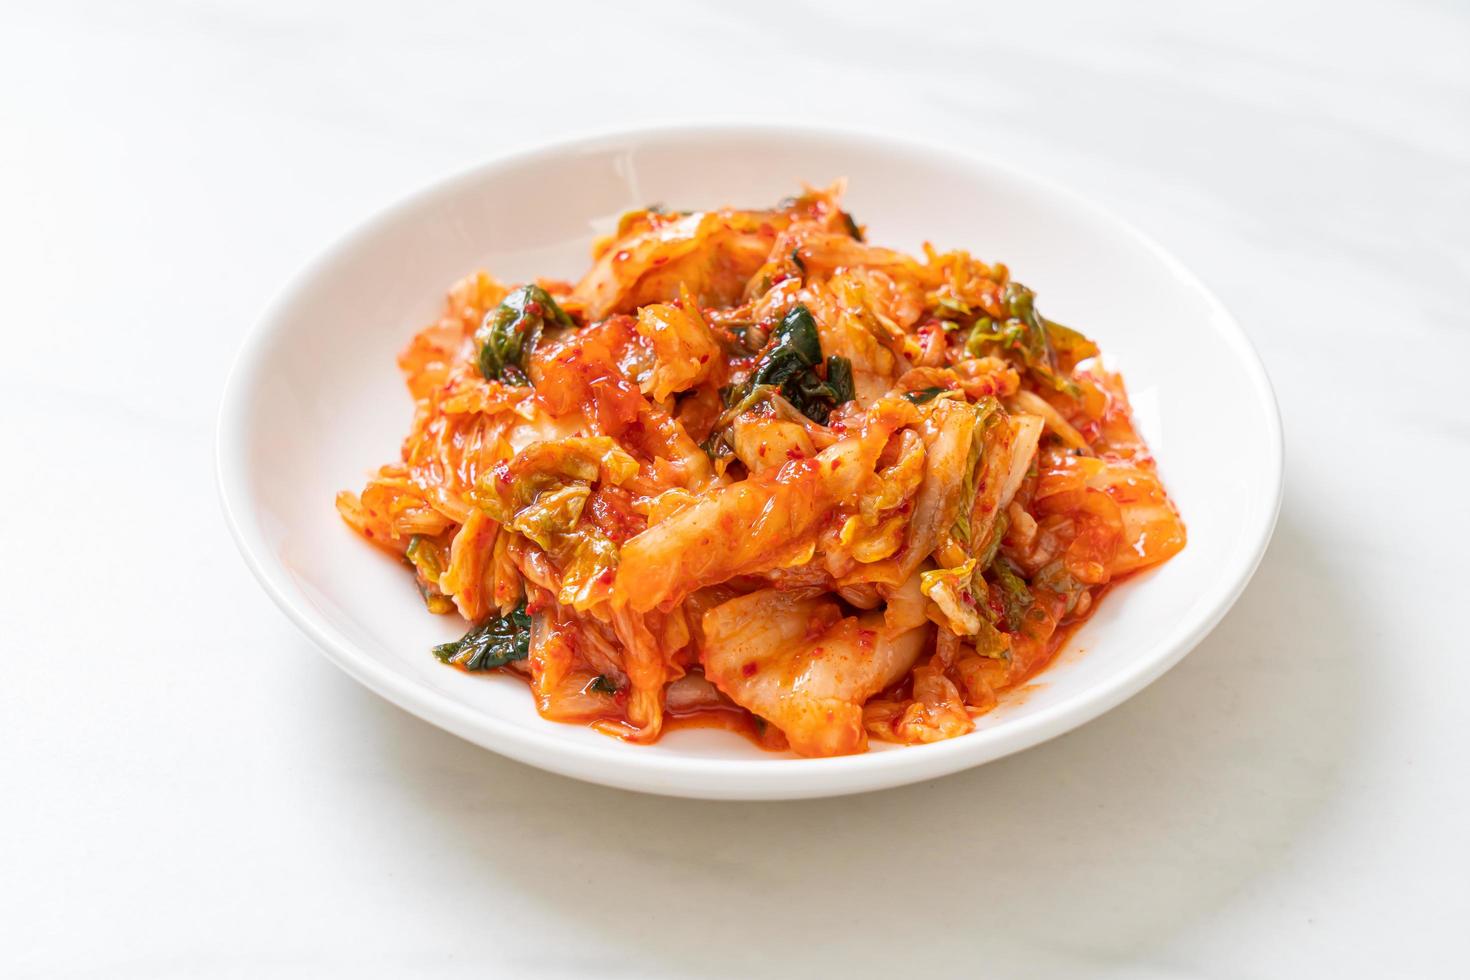 cavolo kimchi sul piatto foto